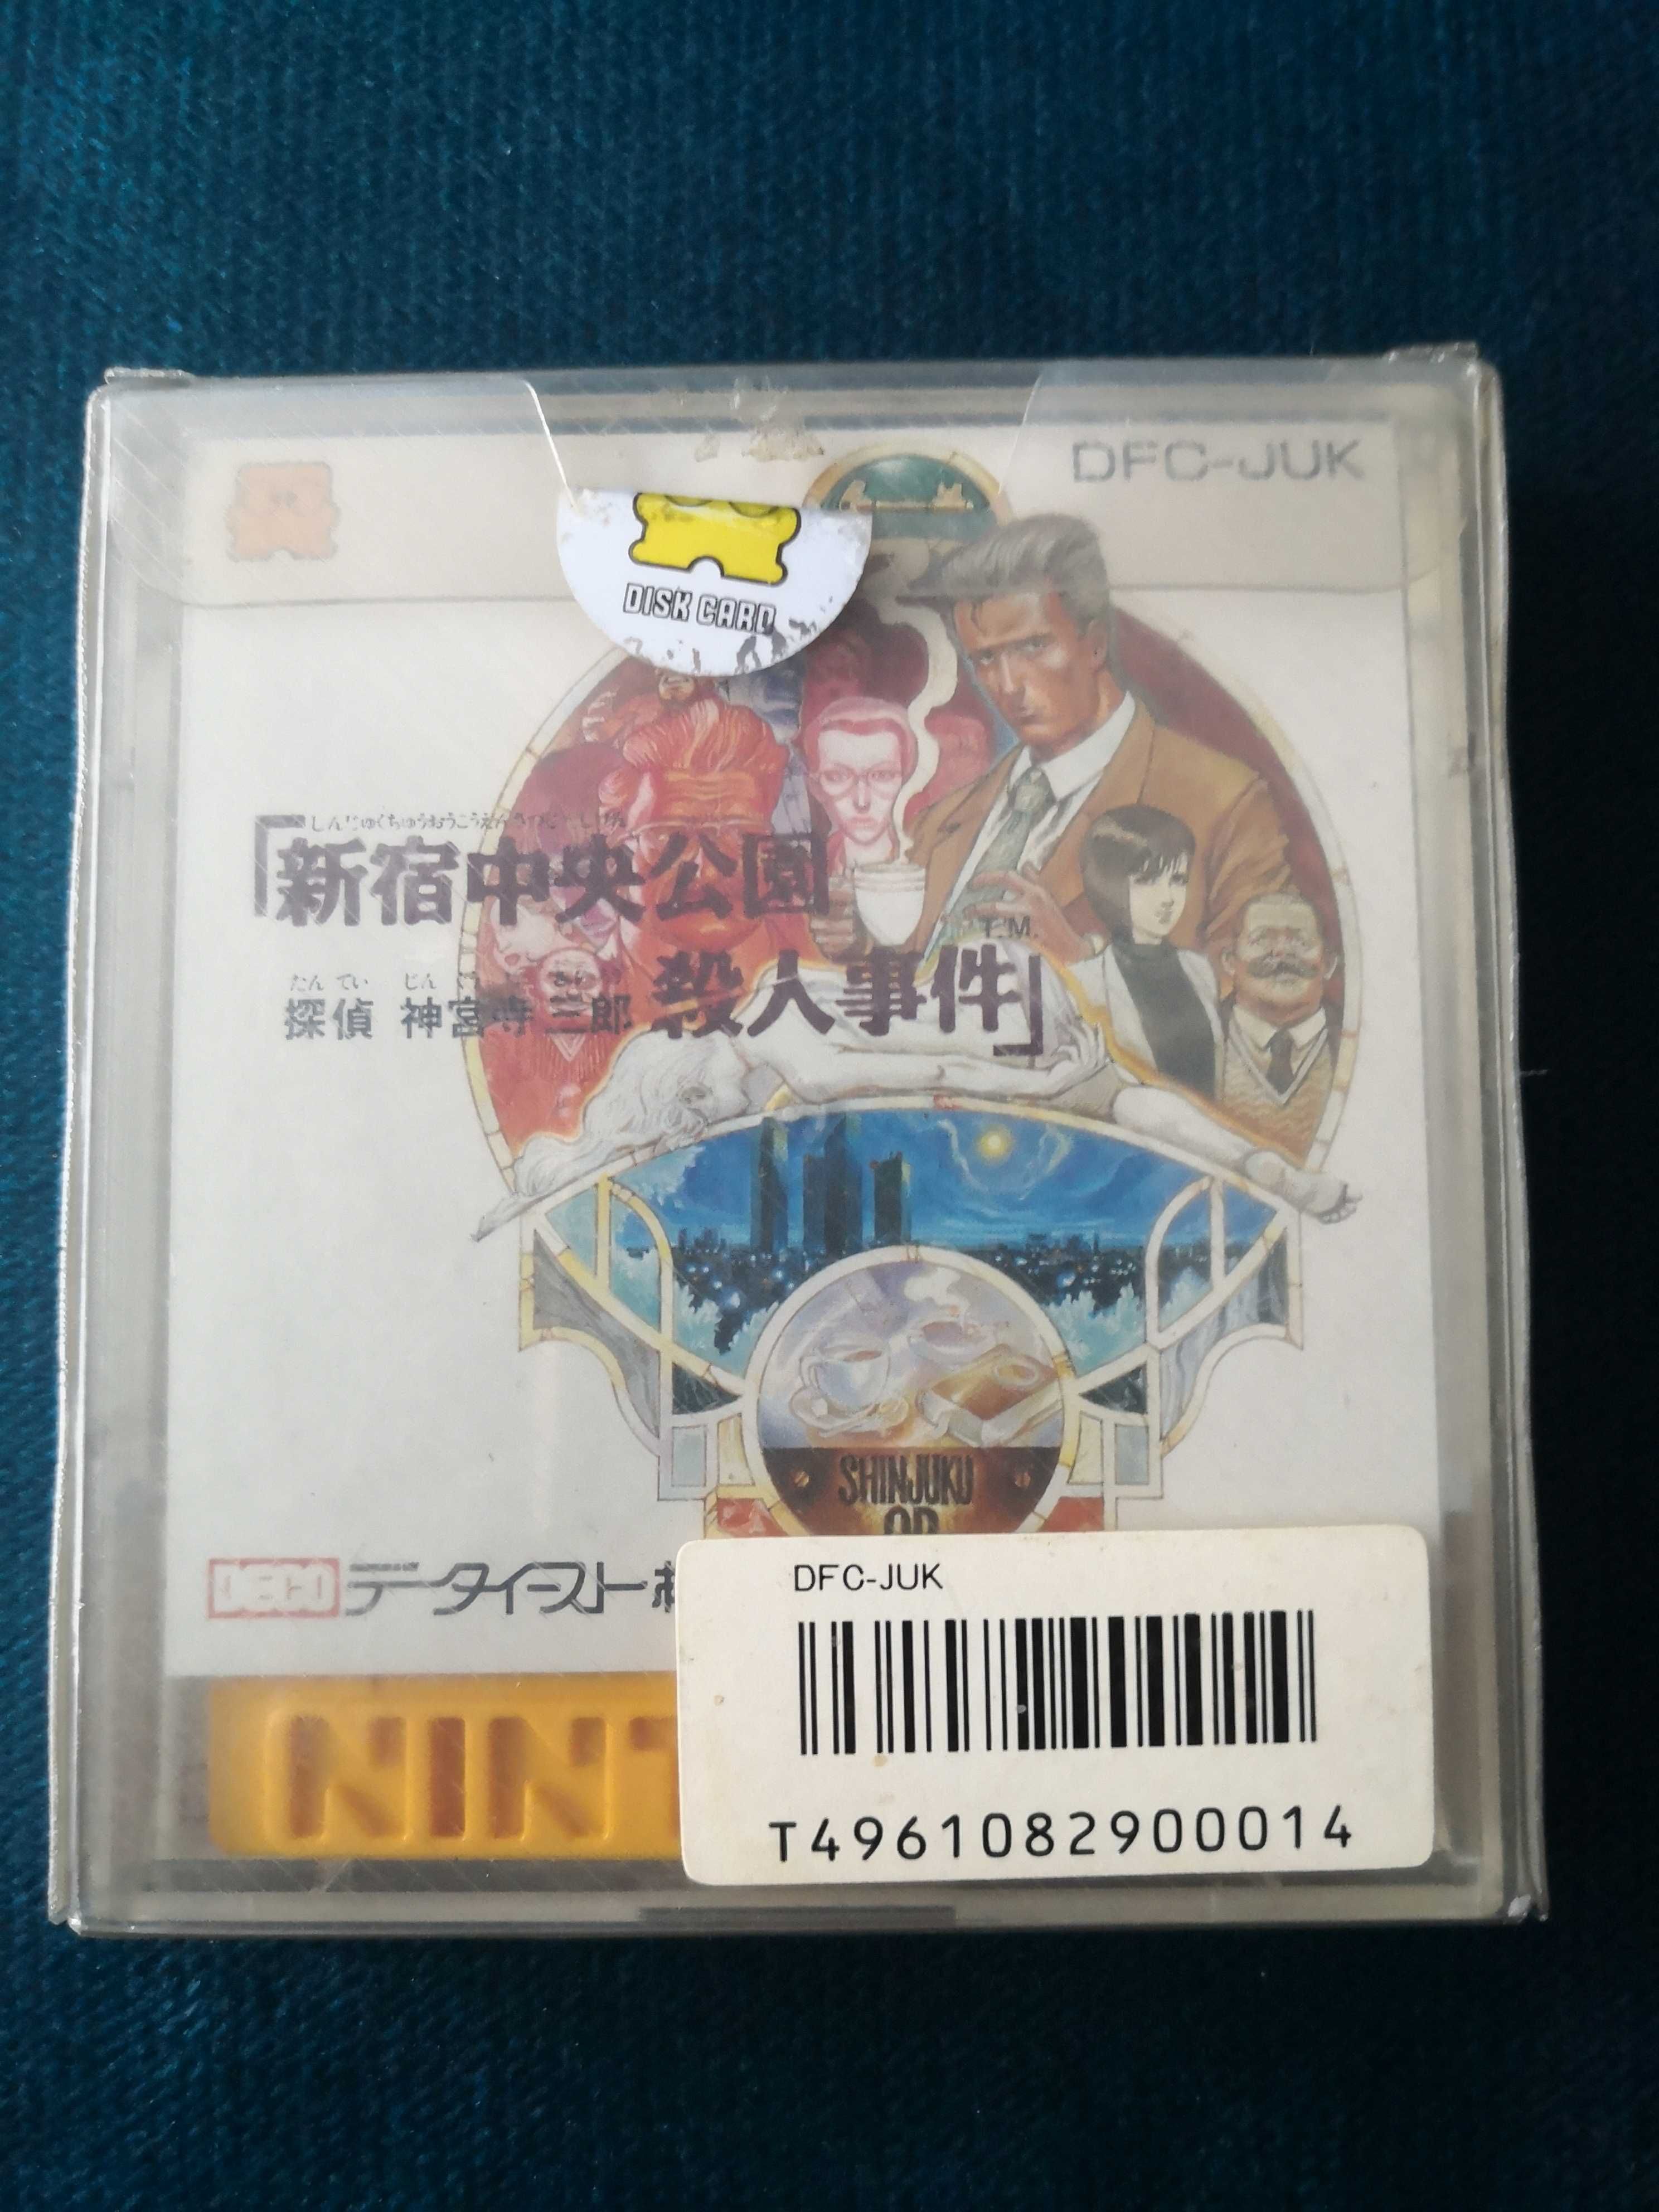 Gra Detective Jinguji Shinjuku Koen Nintendo Famicom Disk